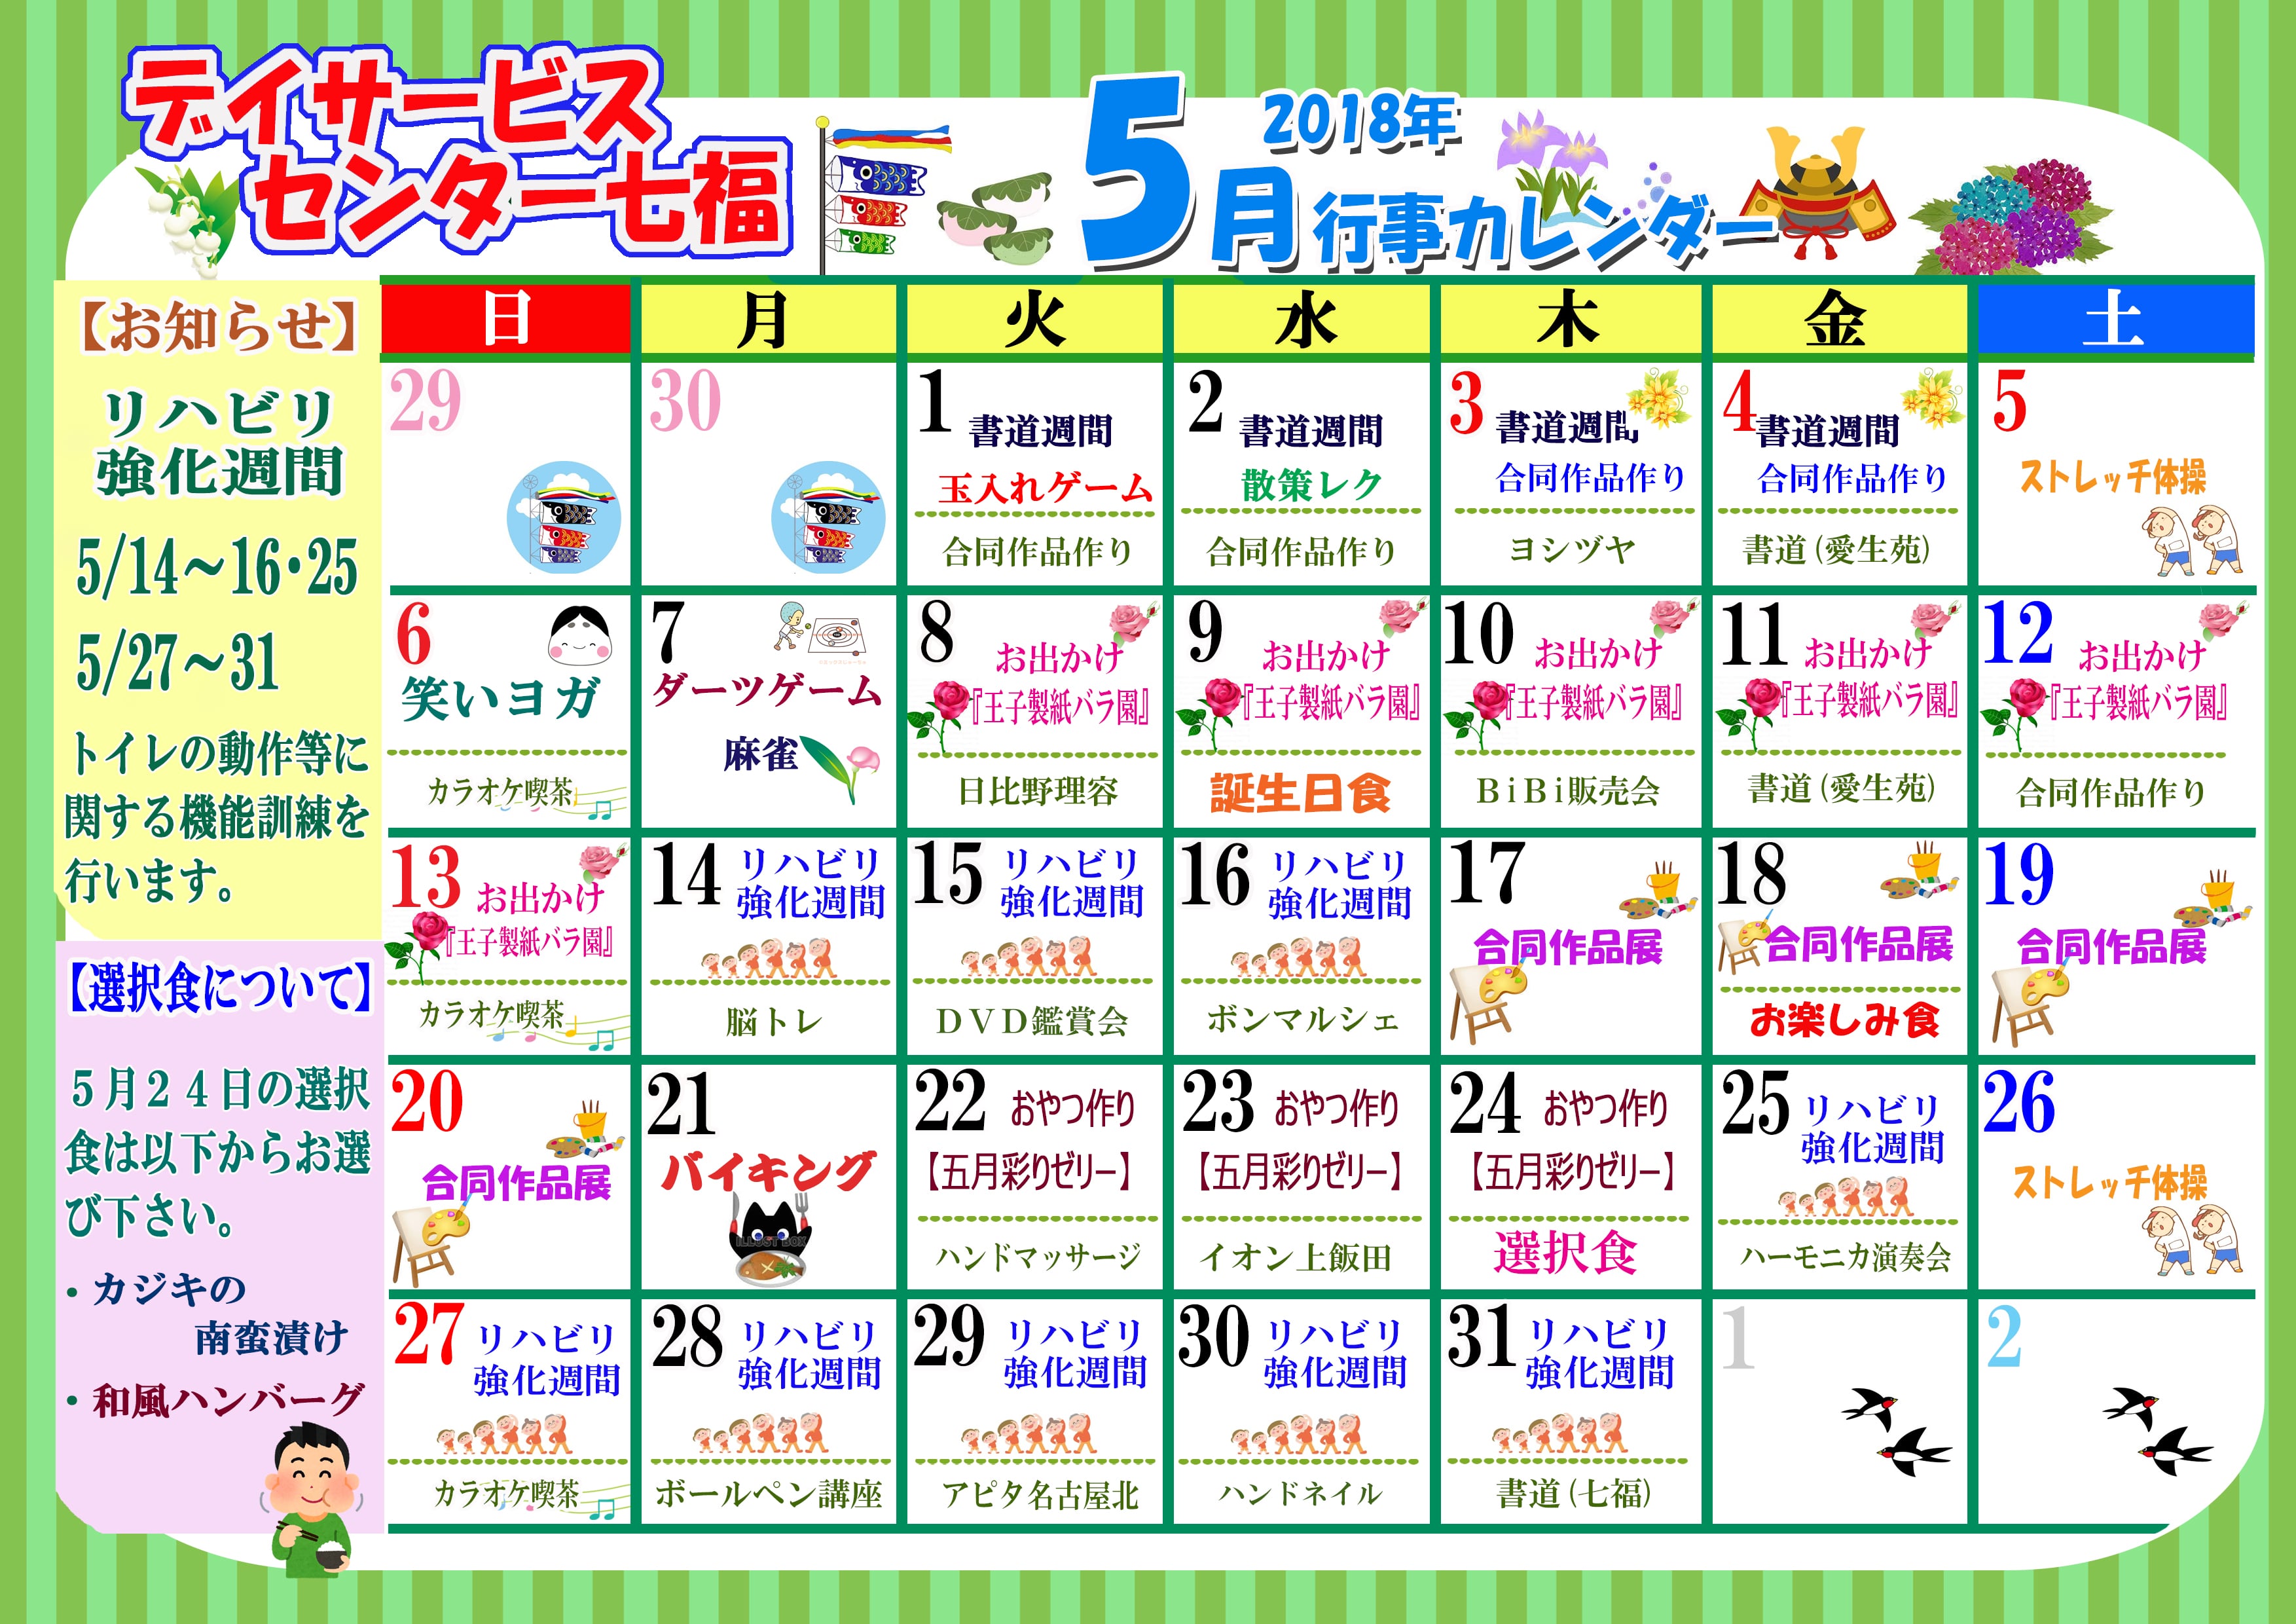 デイサービスセンター七福 5月のカレンダーが完成しました 名古屋で介護 福祉事業を展開する愛生福祉会